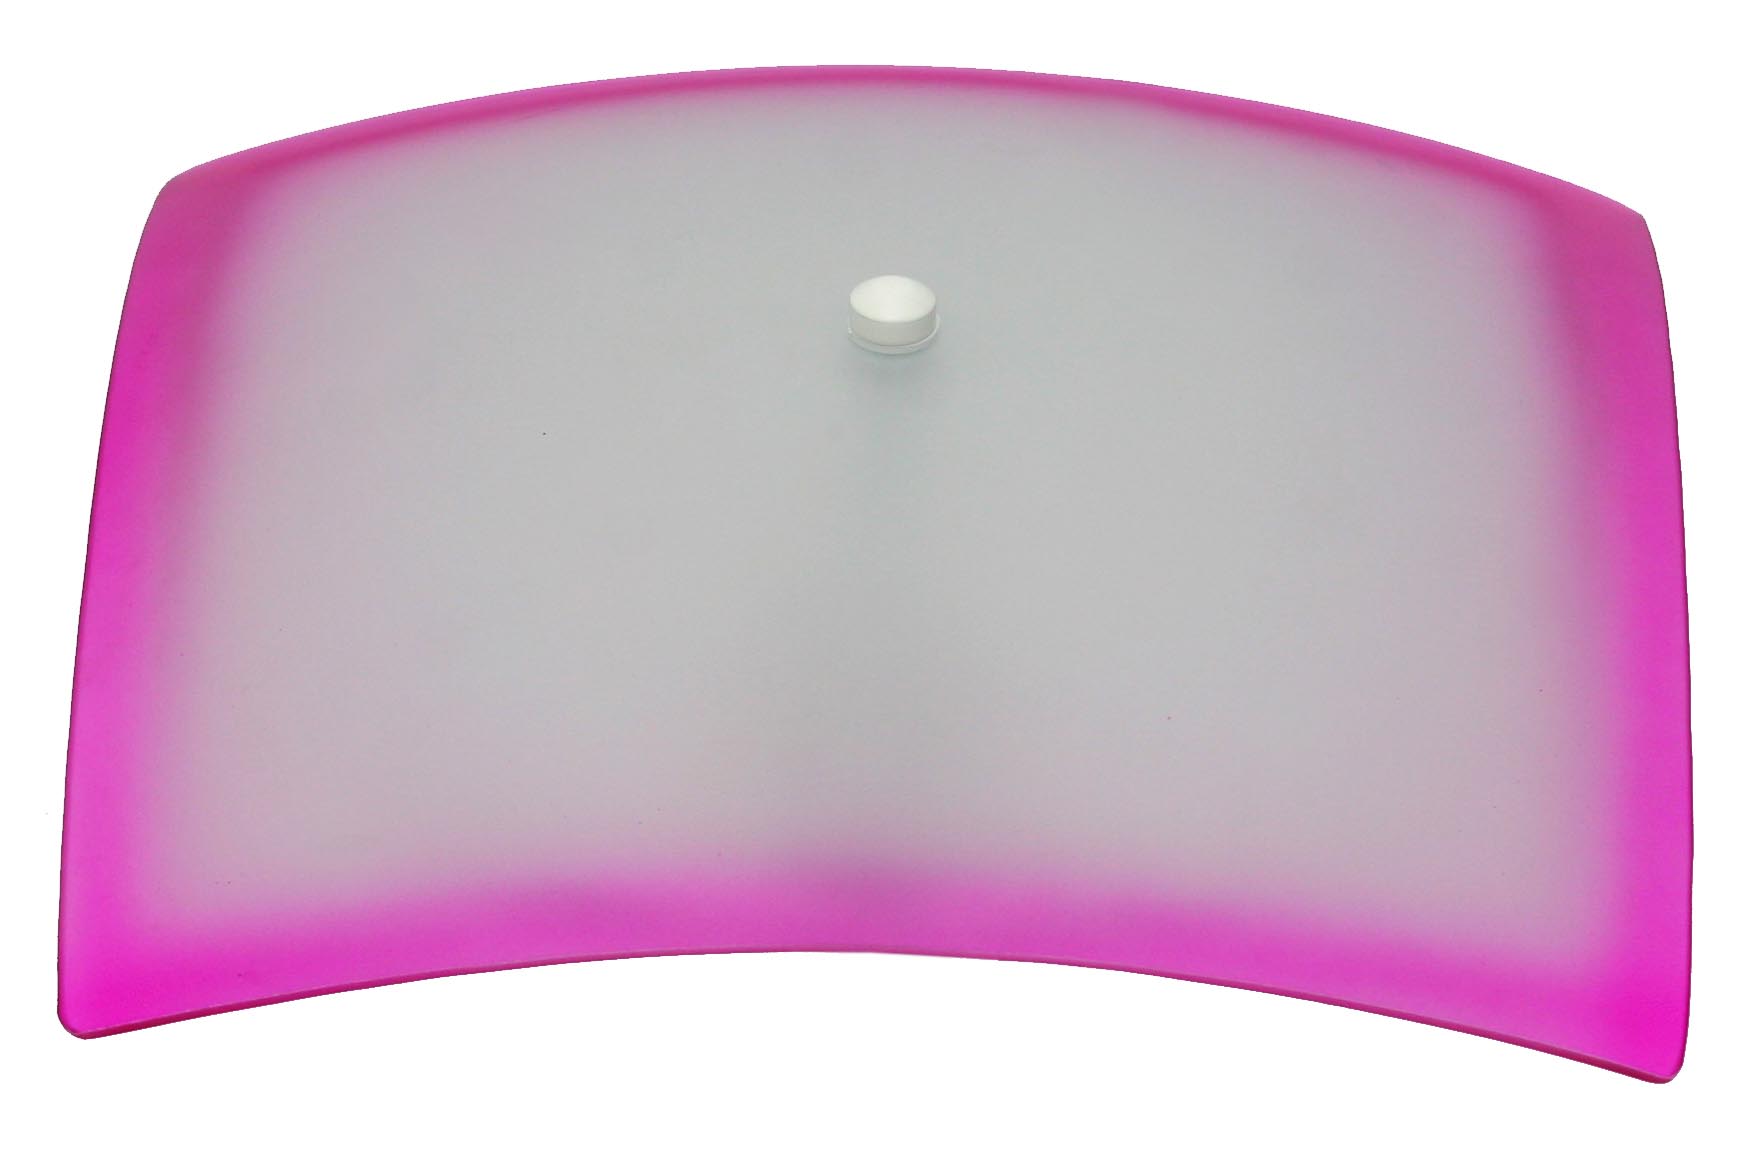 Plafon Charme Com Vidro Quadrado Fosco Com Borda Rosa de 300mm Com 1 Furo